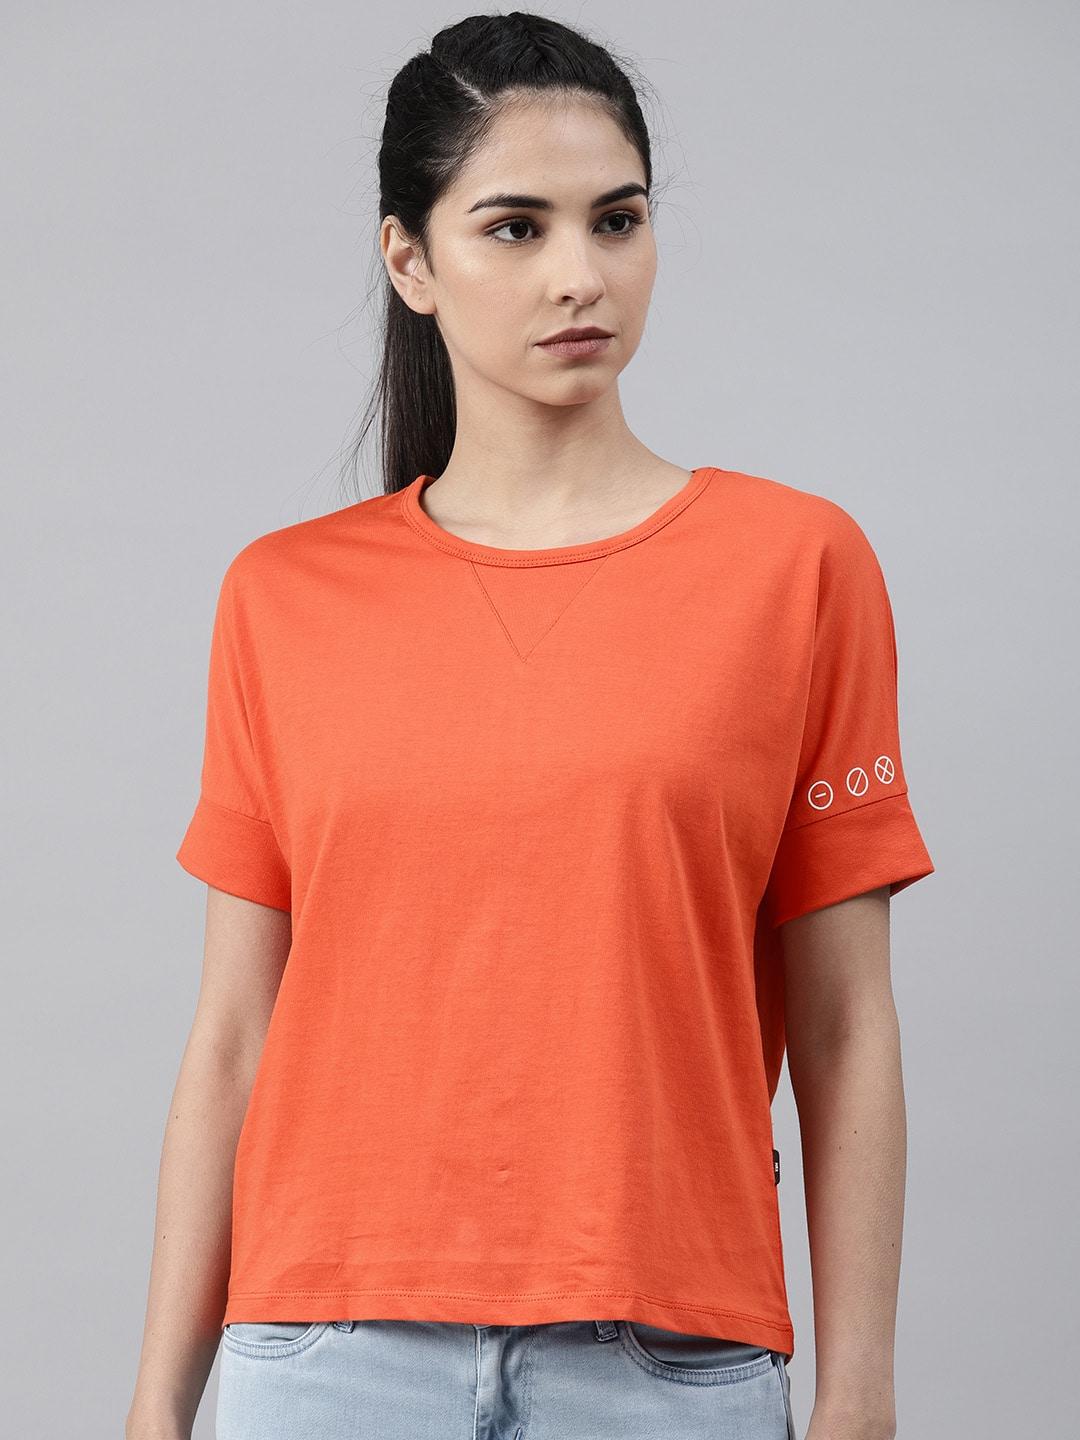 hrx by hrithik roshan women orange solid round neck t-shirt